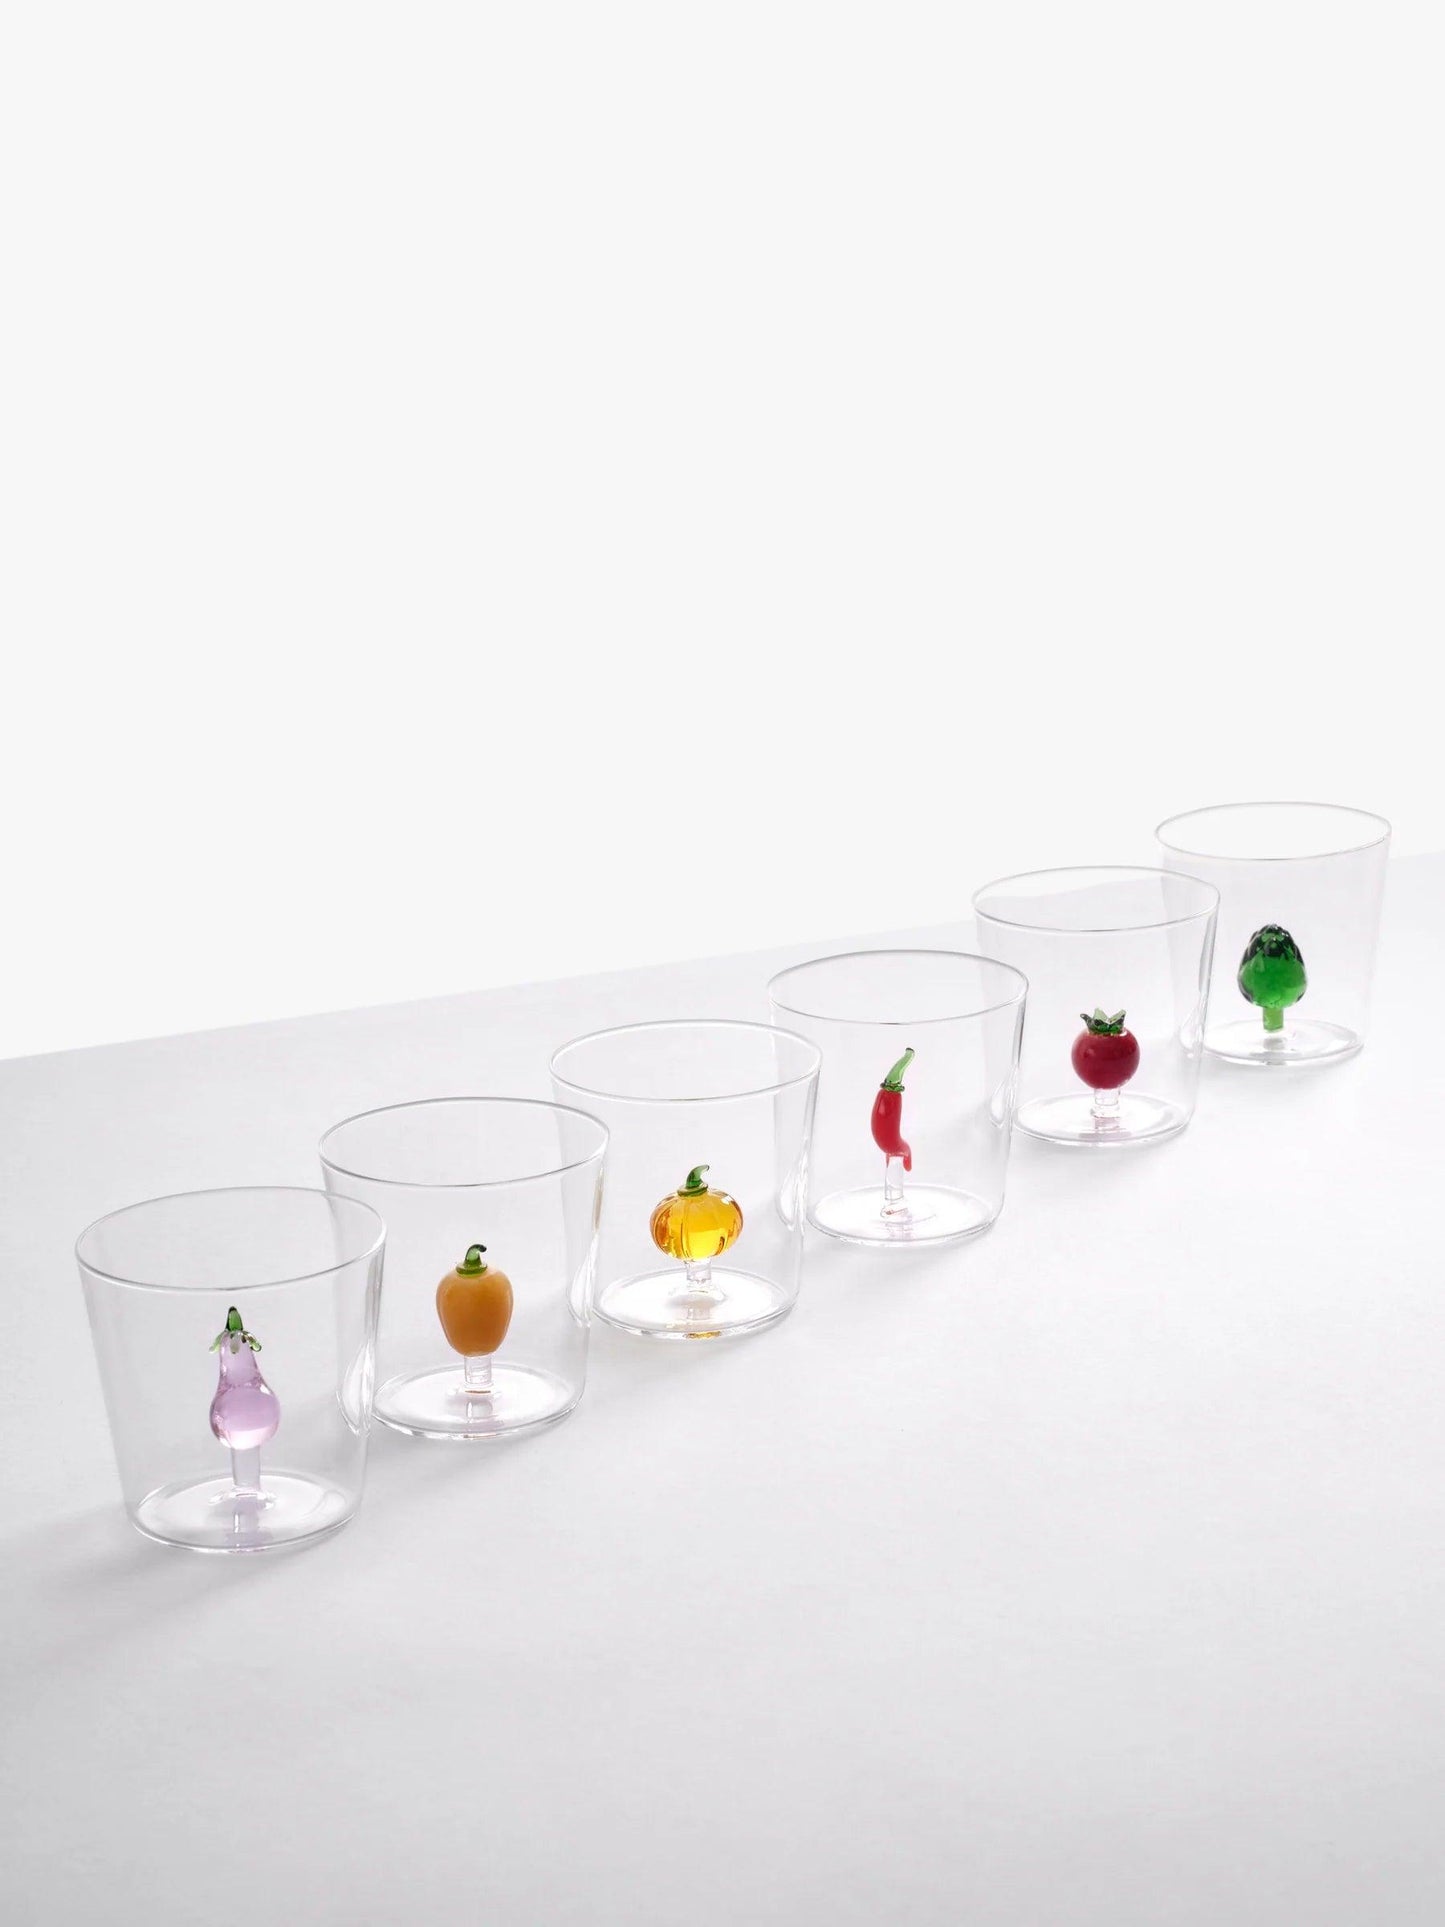 ICHENDORF // GLASS VEGETABLE COLLECTION